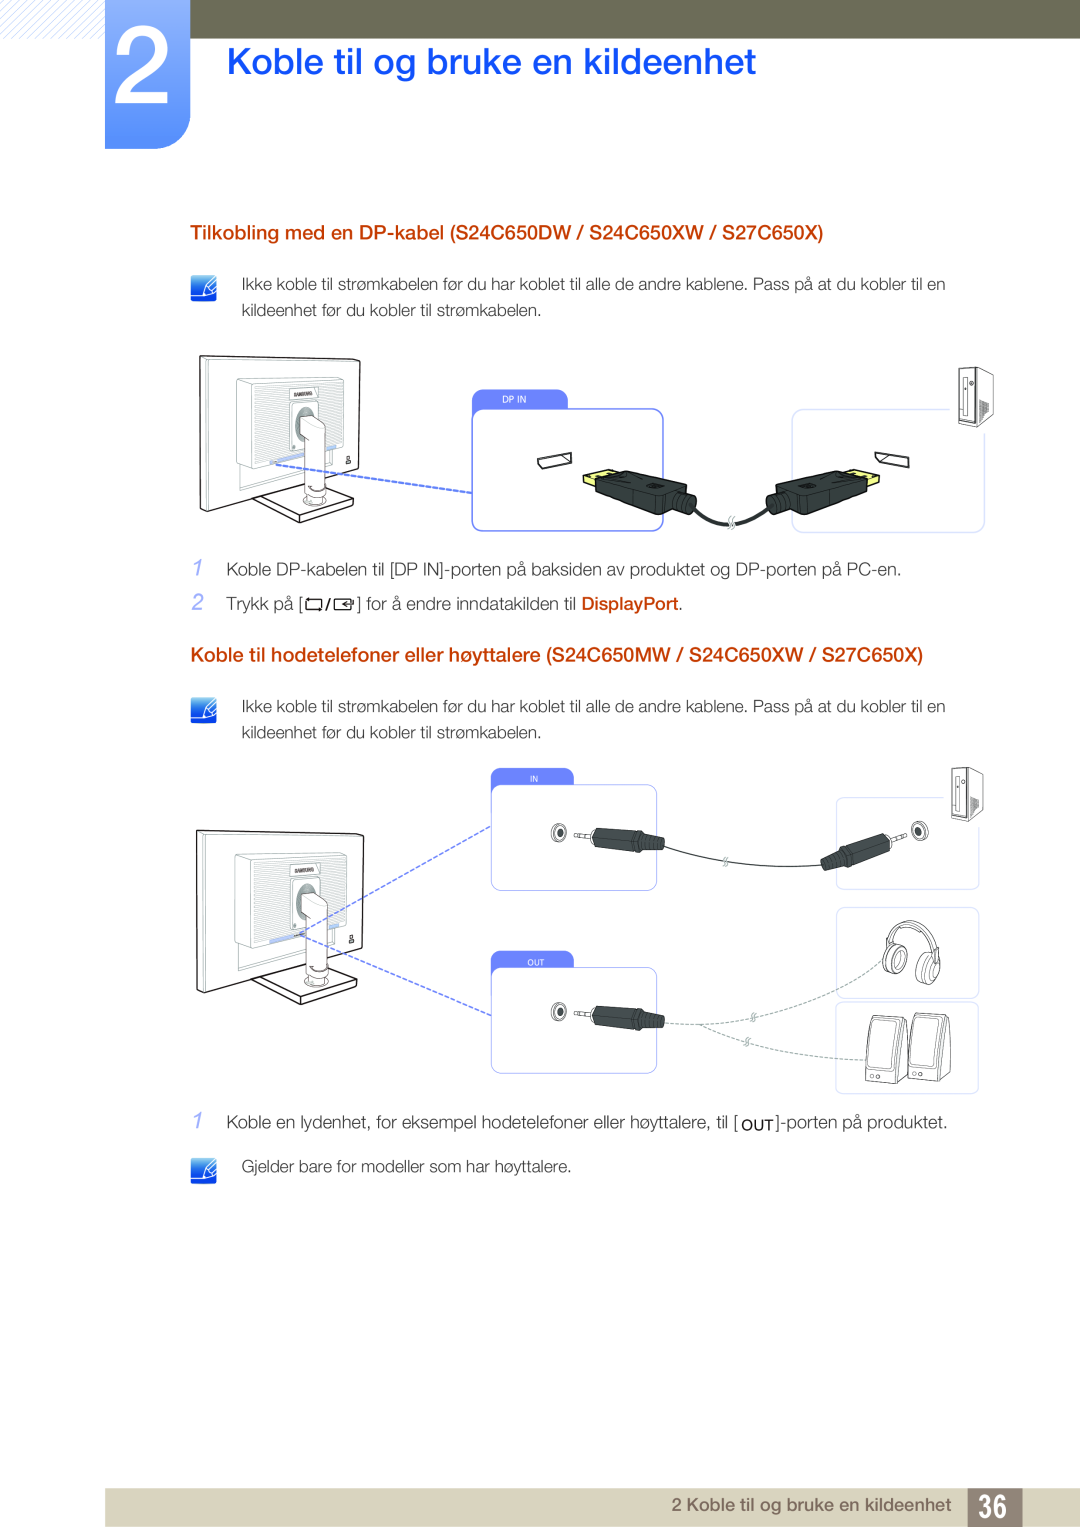 Samsung LS24C65XMWG/EN manual Koble til og bruke en kildeenhet, Tilkobling med en DP-kabel S24C650DW / S24C650XW / S27C650X 